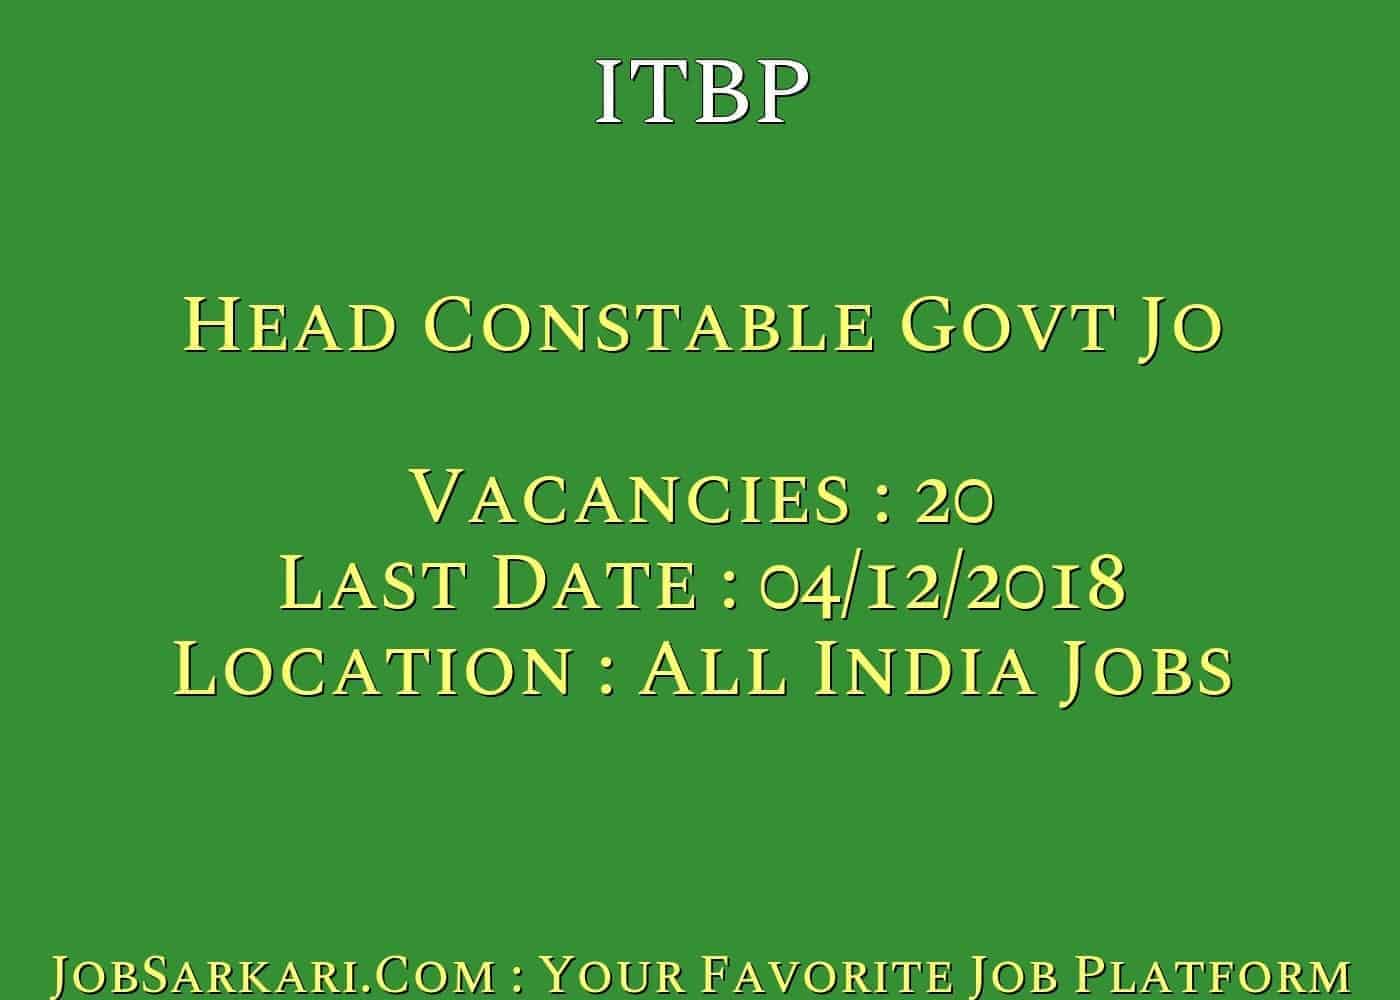 ITBP Recruitment 2018 For Head Constable Govt Job